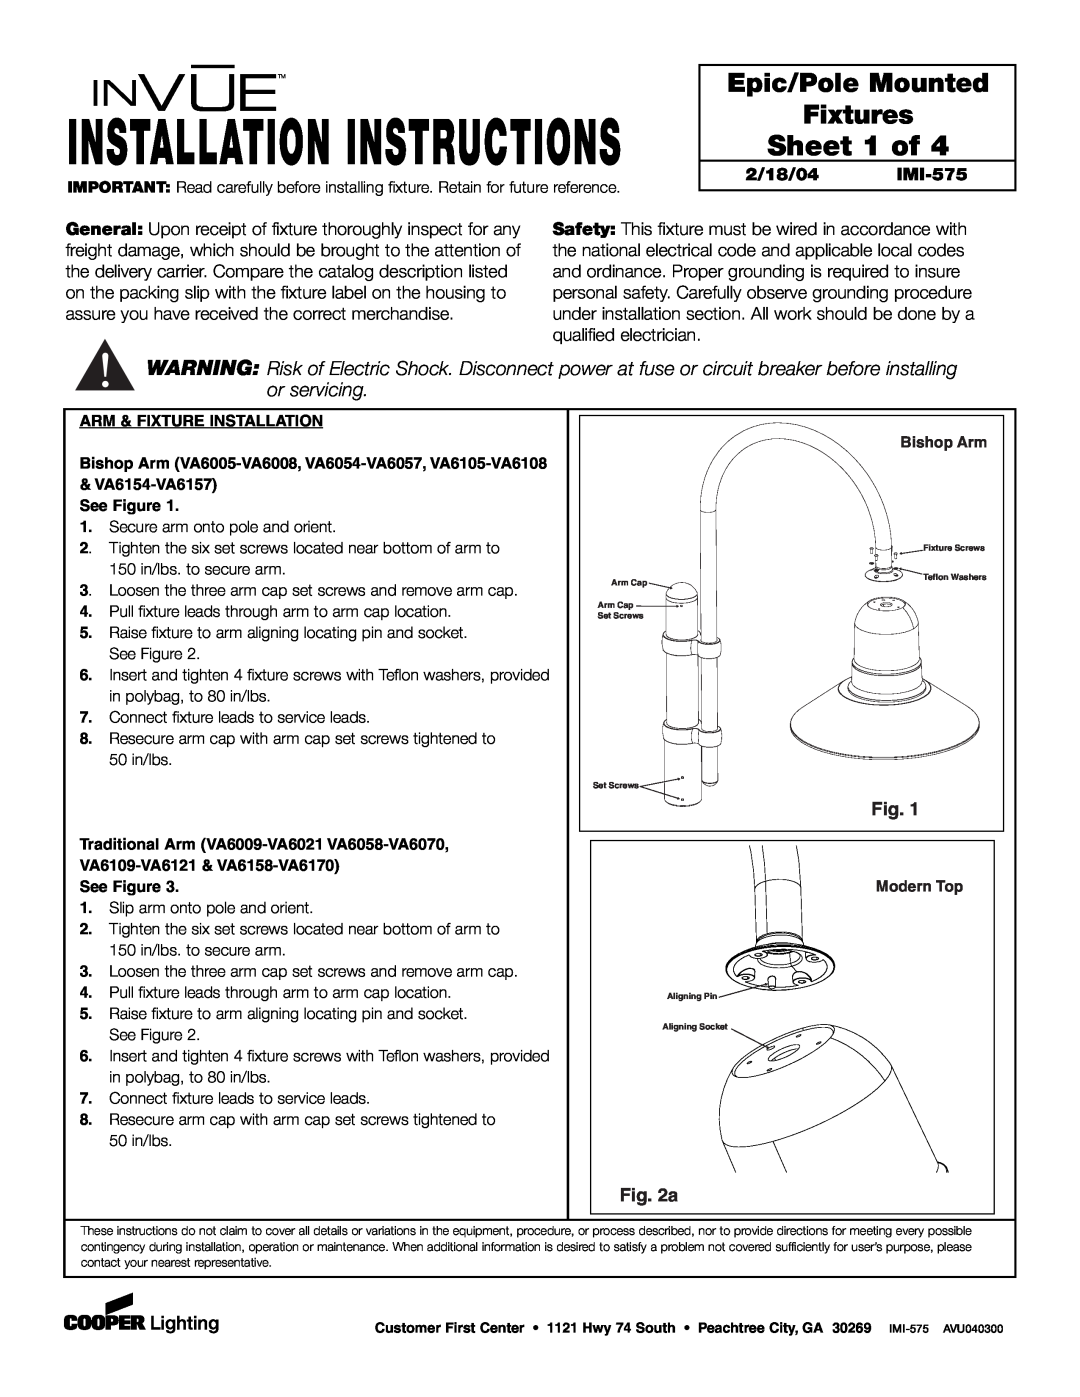 Cooper Lighting IMI-575 installation instructions Installation Instructions, Sheet 1 of, Epic/Pole Mounted Fixtures 